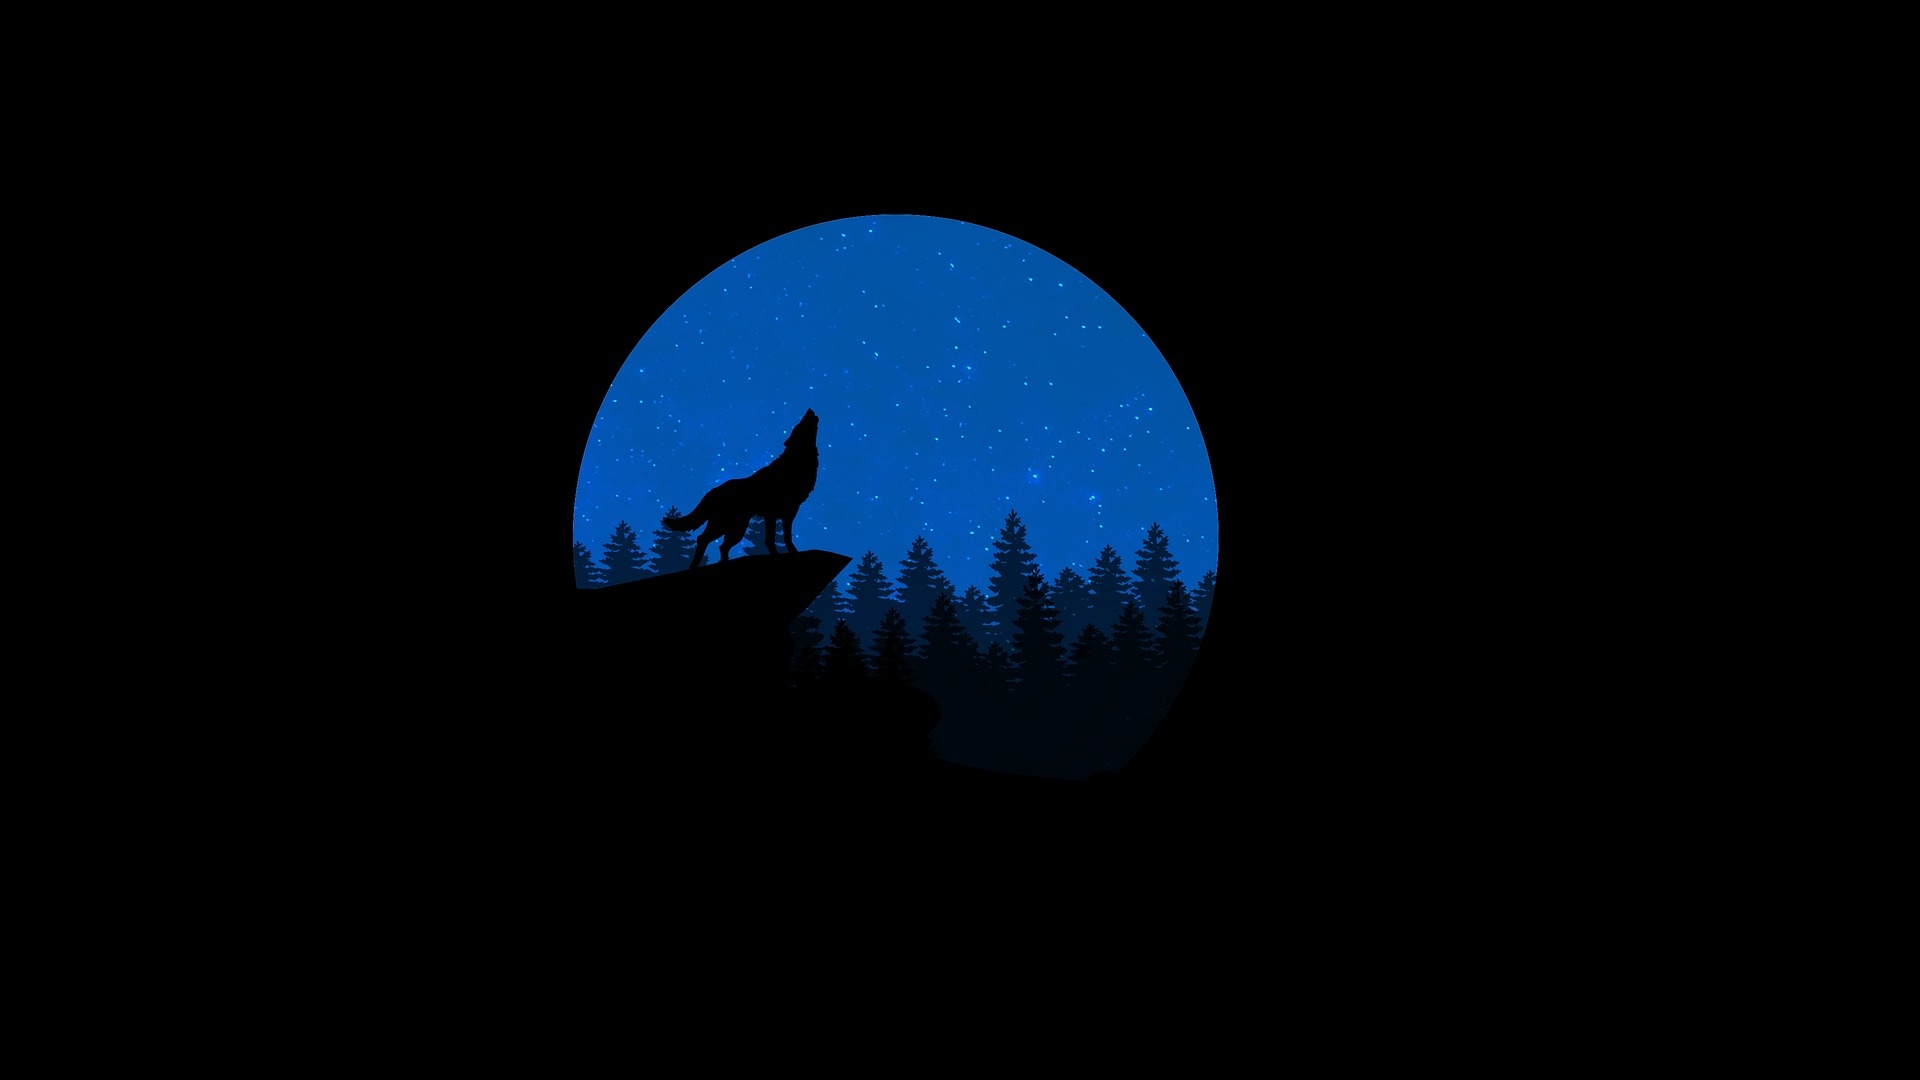 Howling wolf, Blue moon backdrop, Nighttime beauty, Serene atmosphere, 1920x1080 Full HD Desktop